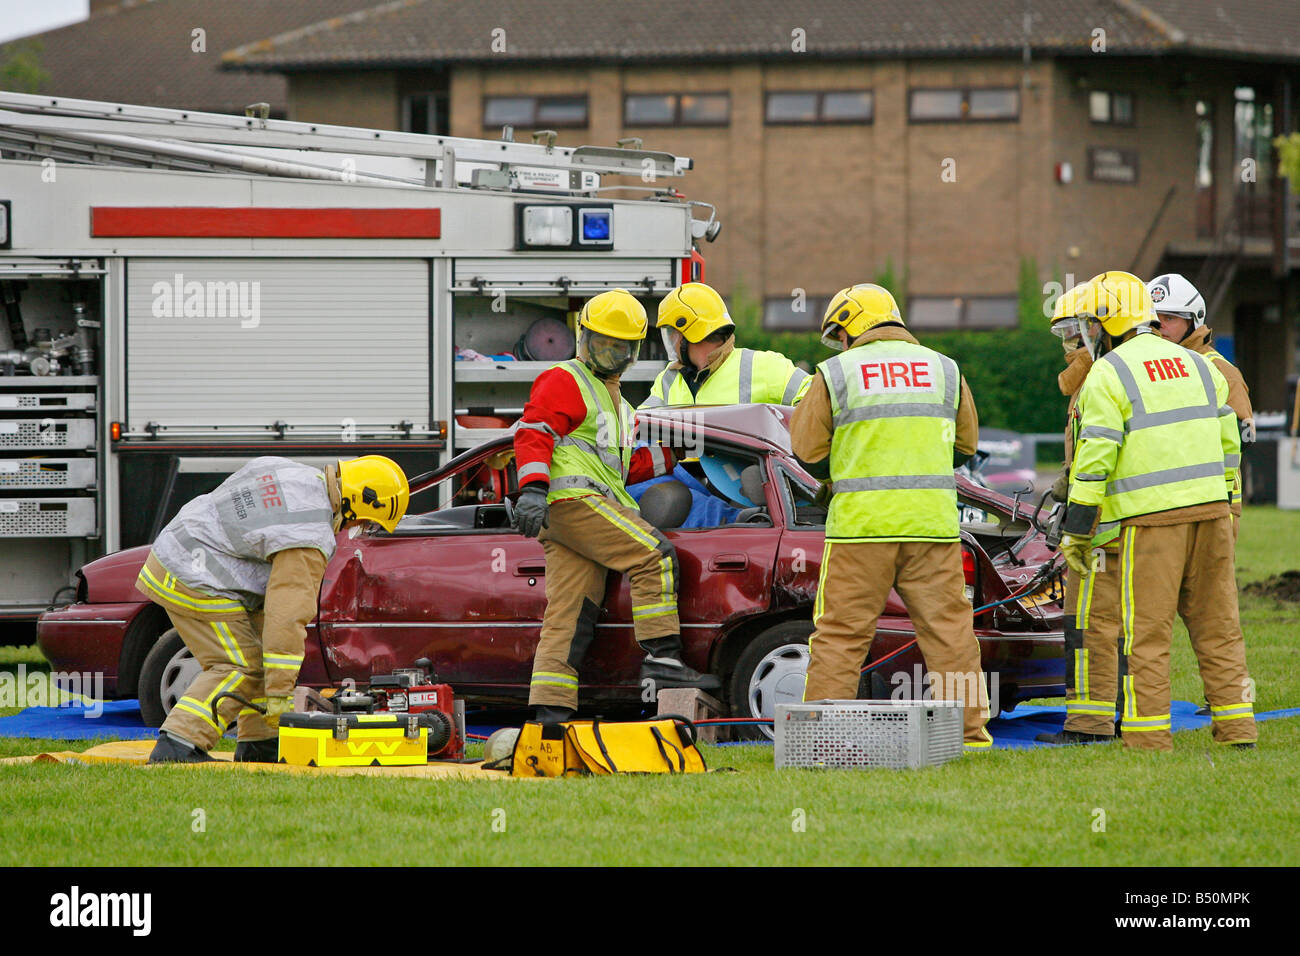 Démonstration des pompiers de couper le toit d'une voiture dans un accident Banque D'Images